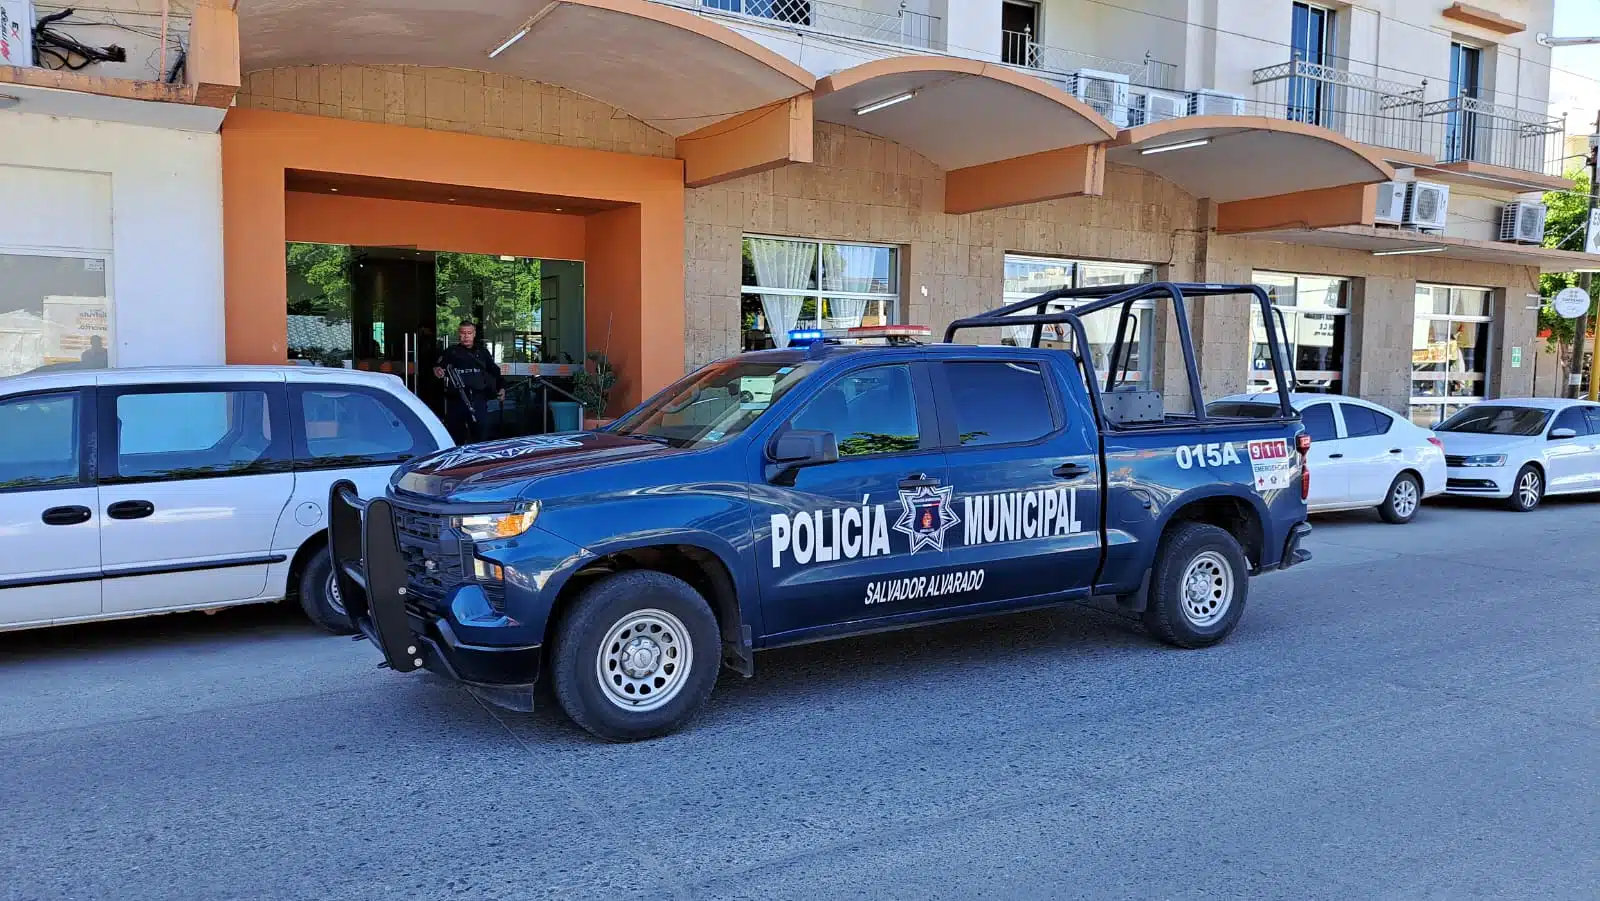 Camioneta de la policía municipal.